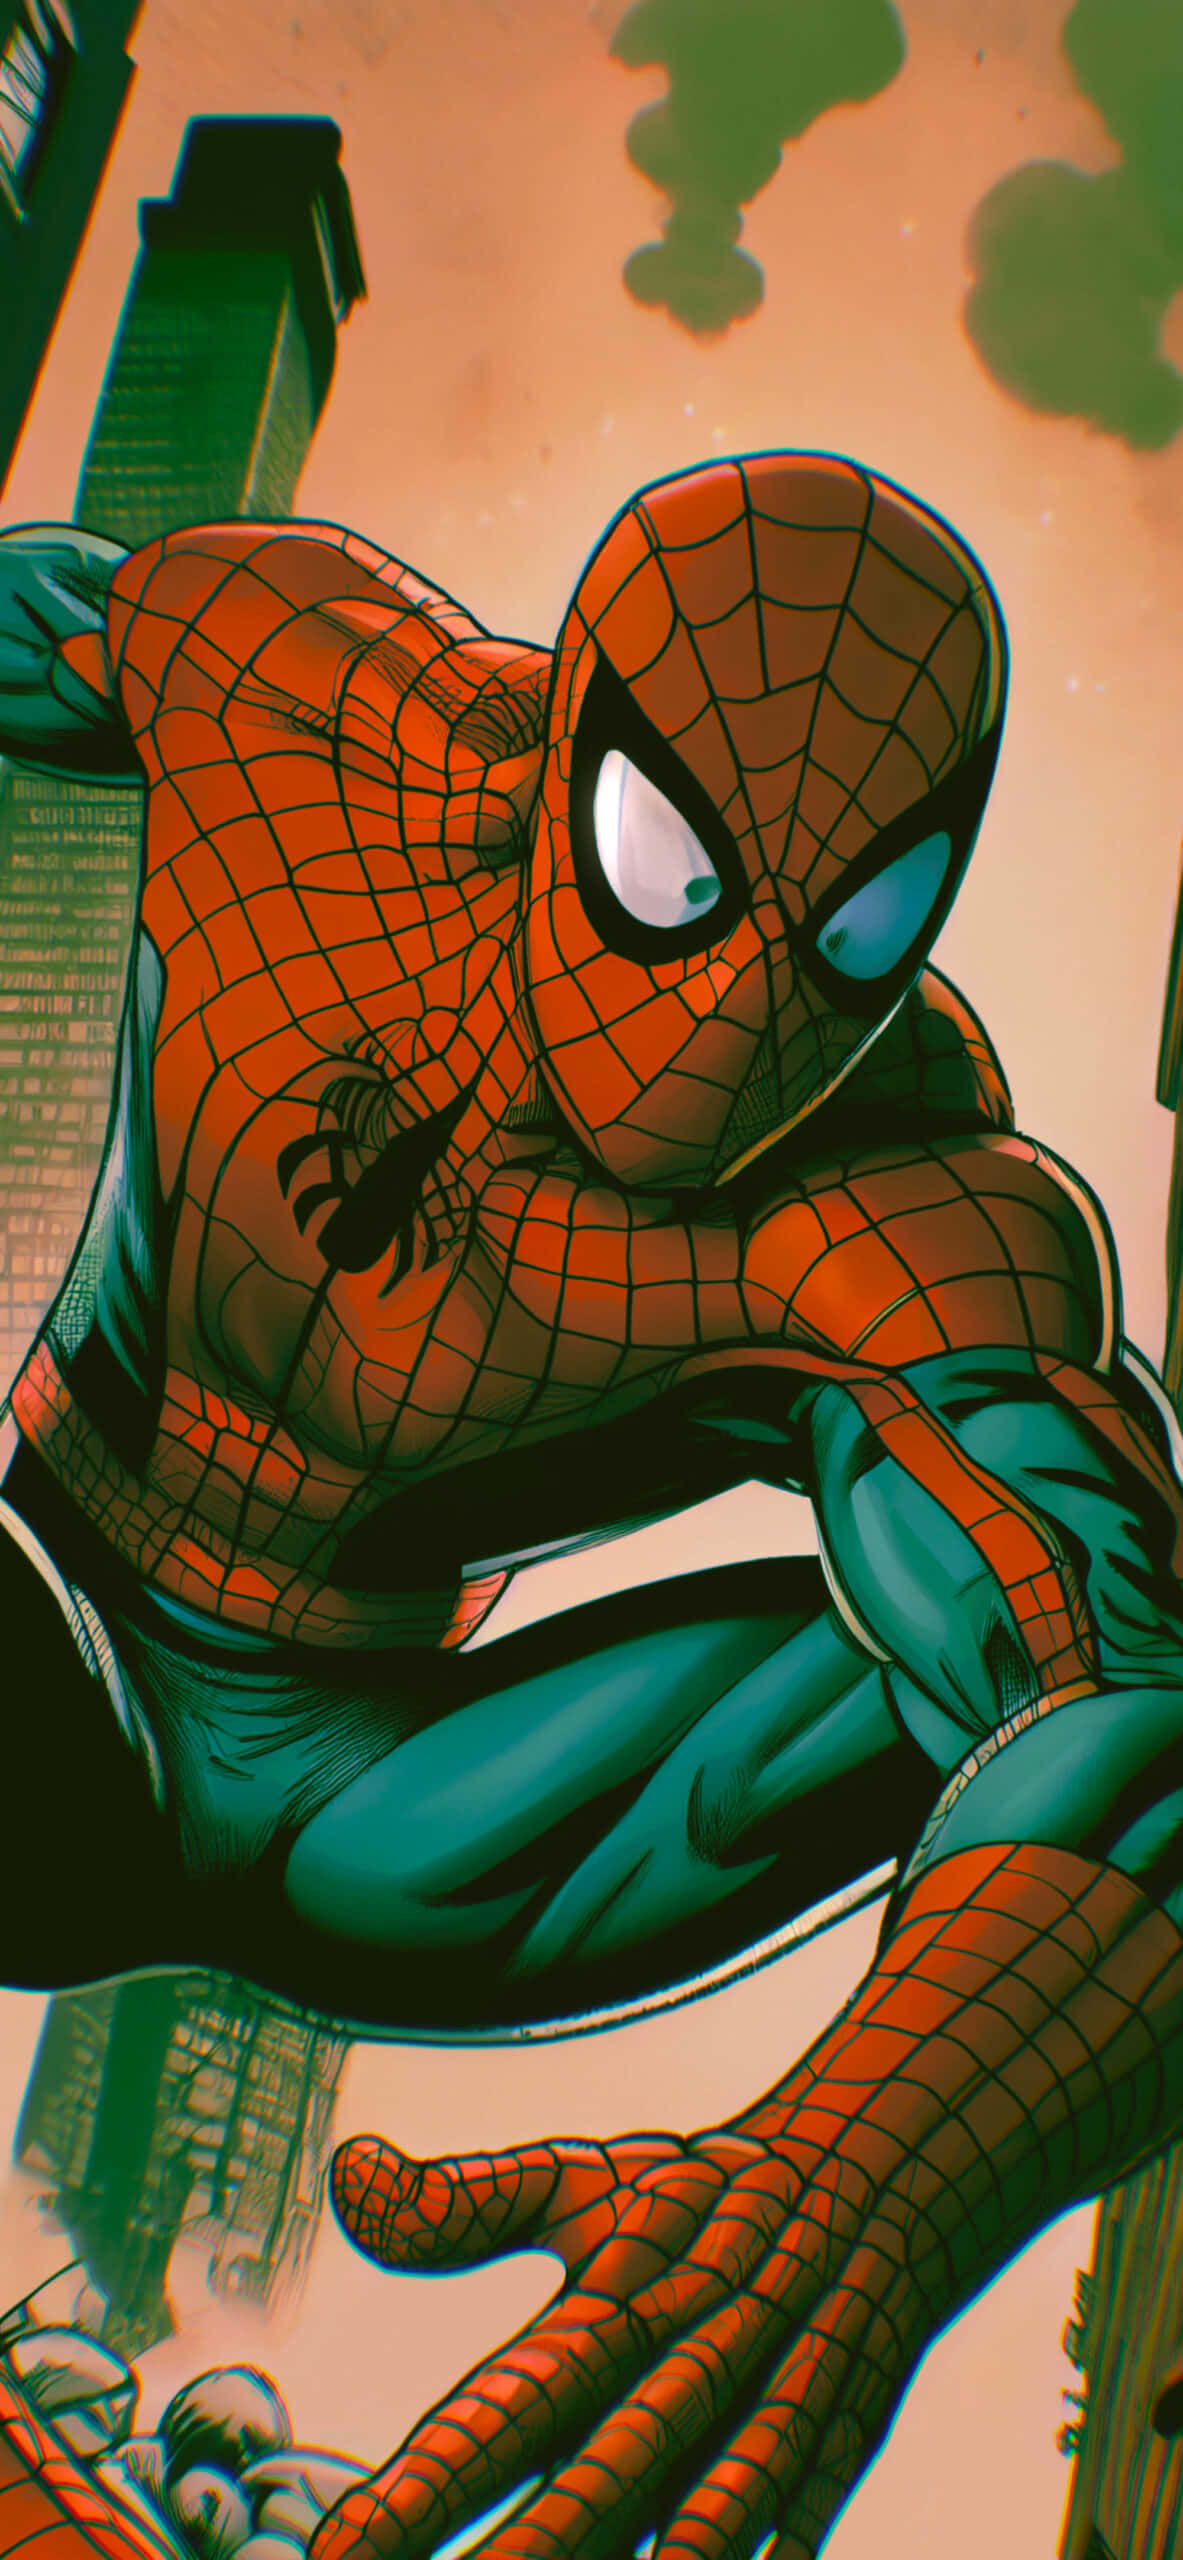 Losfondo Del Fantastico Spider Man.